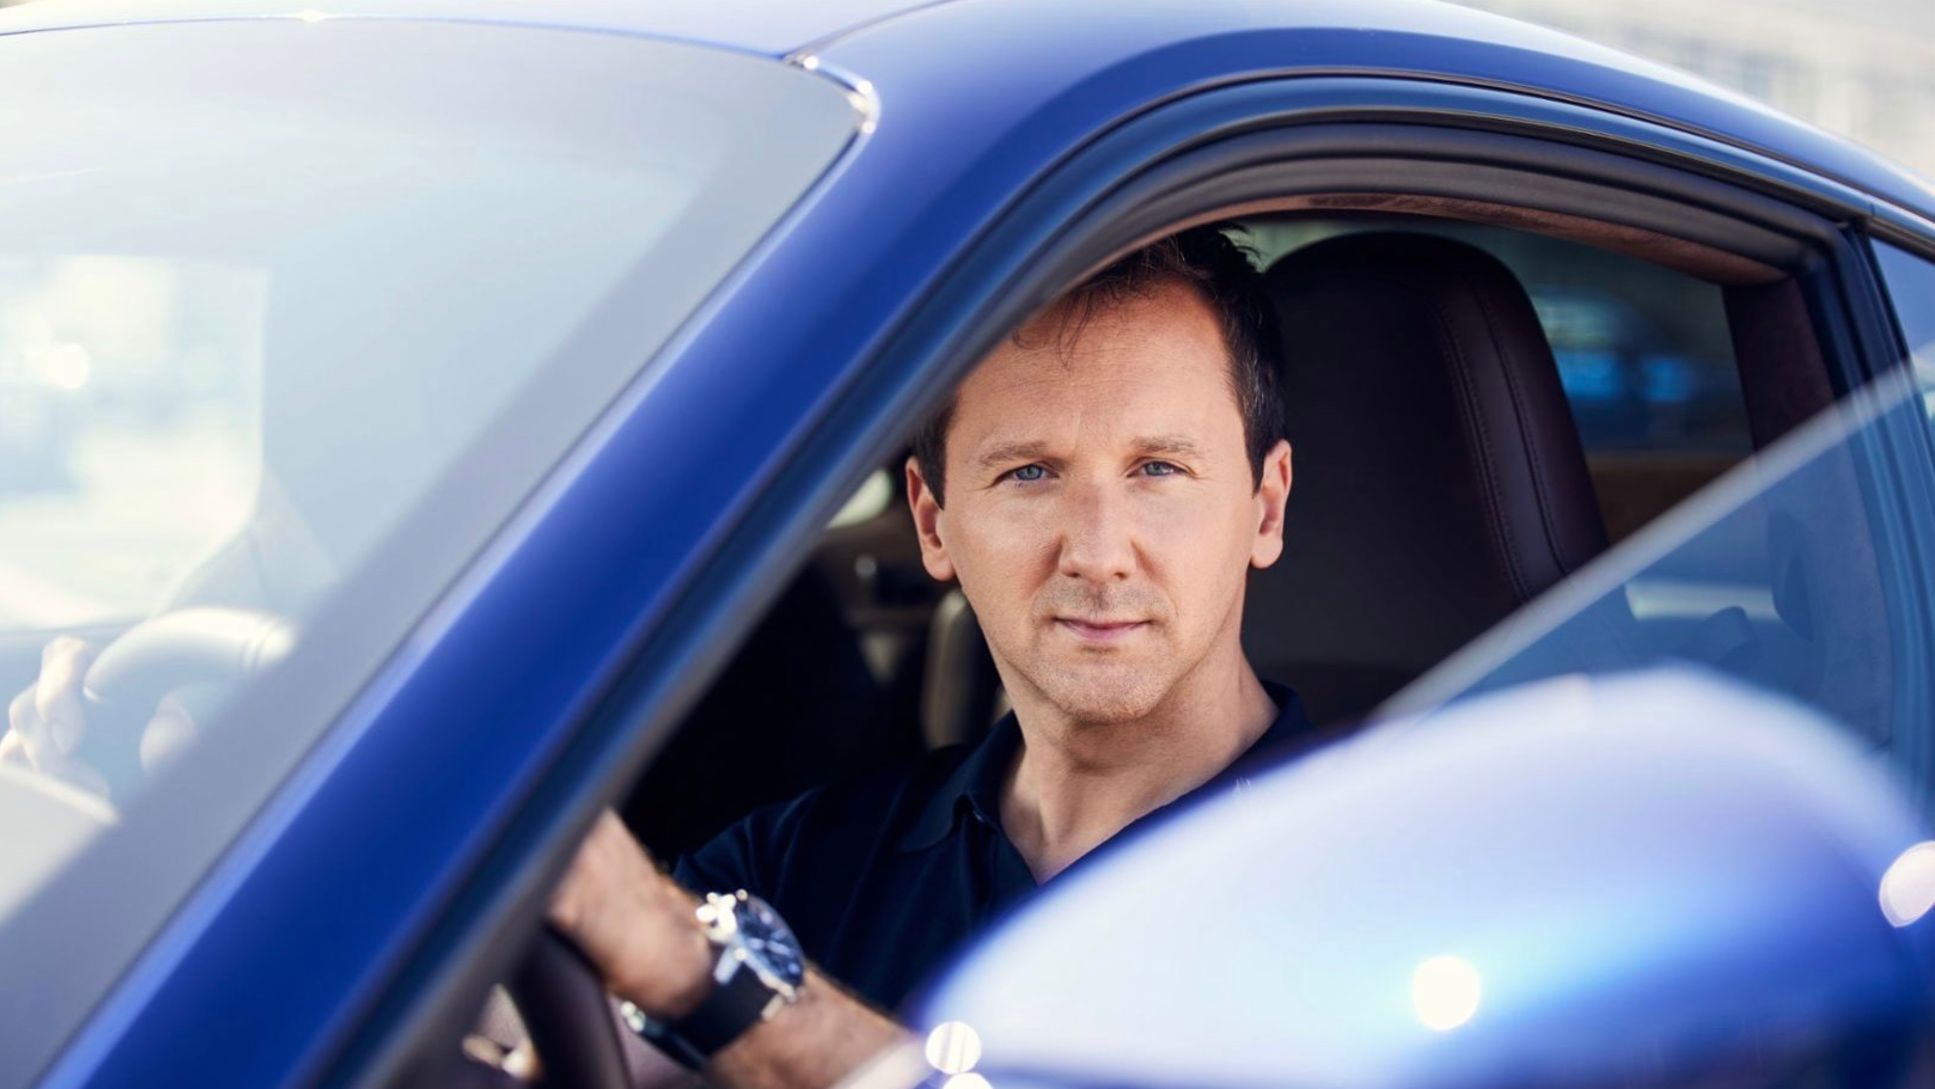 Peter Varga, Director Exterior Design bei Porsche, 911 Turbo S, 2021, Porsche AG